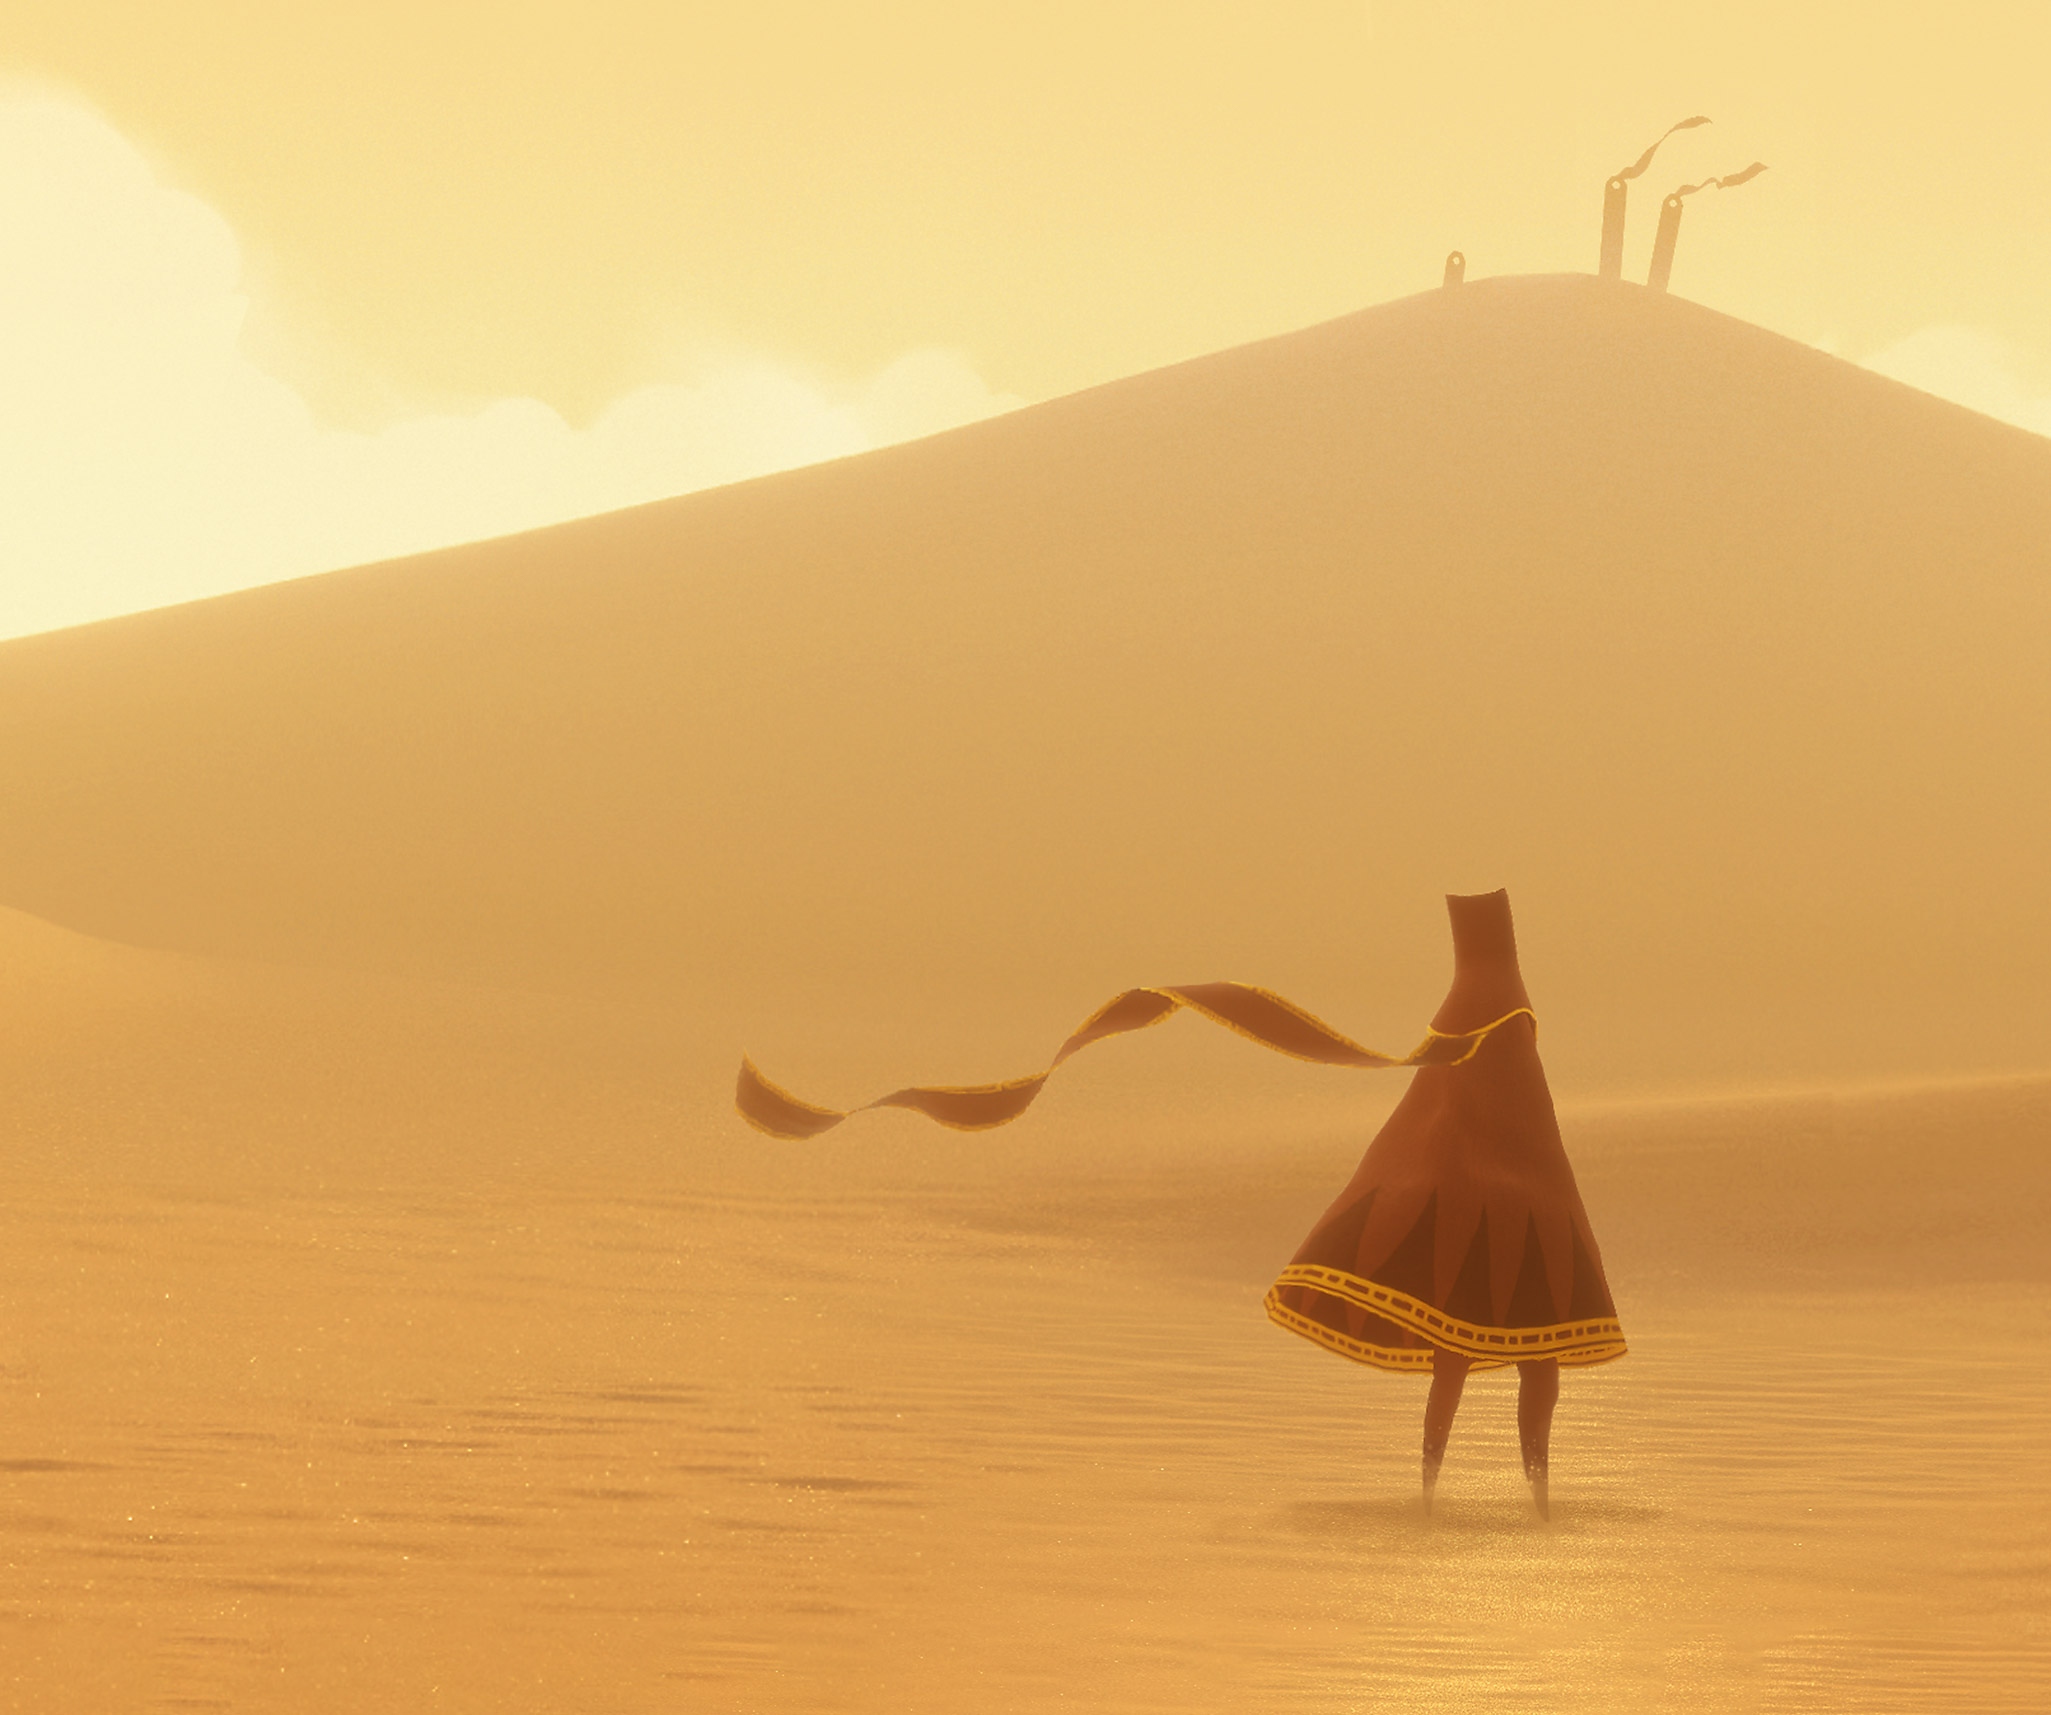 Image de Journey - Le nomade, personnage principal, dans un vaste désert écrasé sous le soleil.